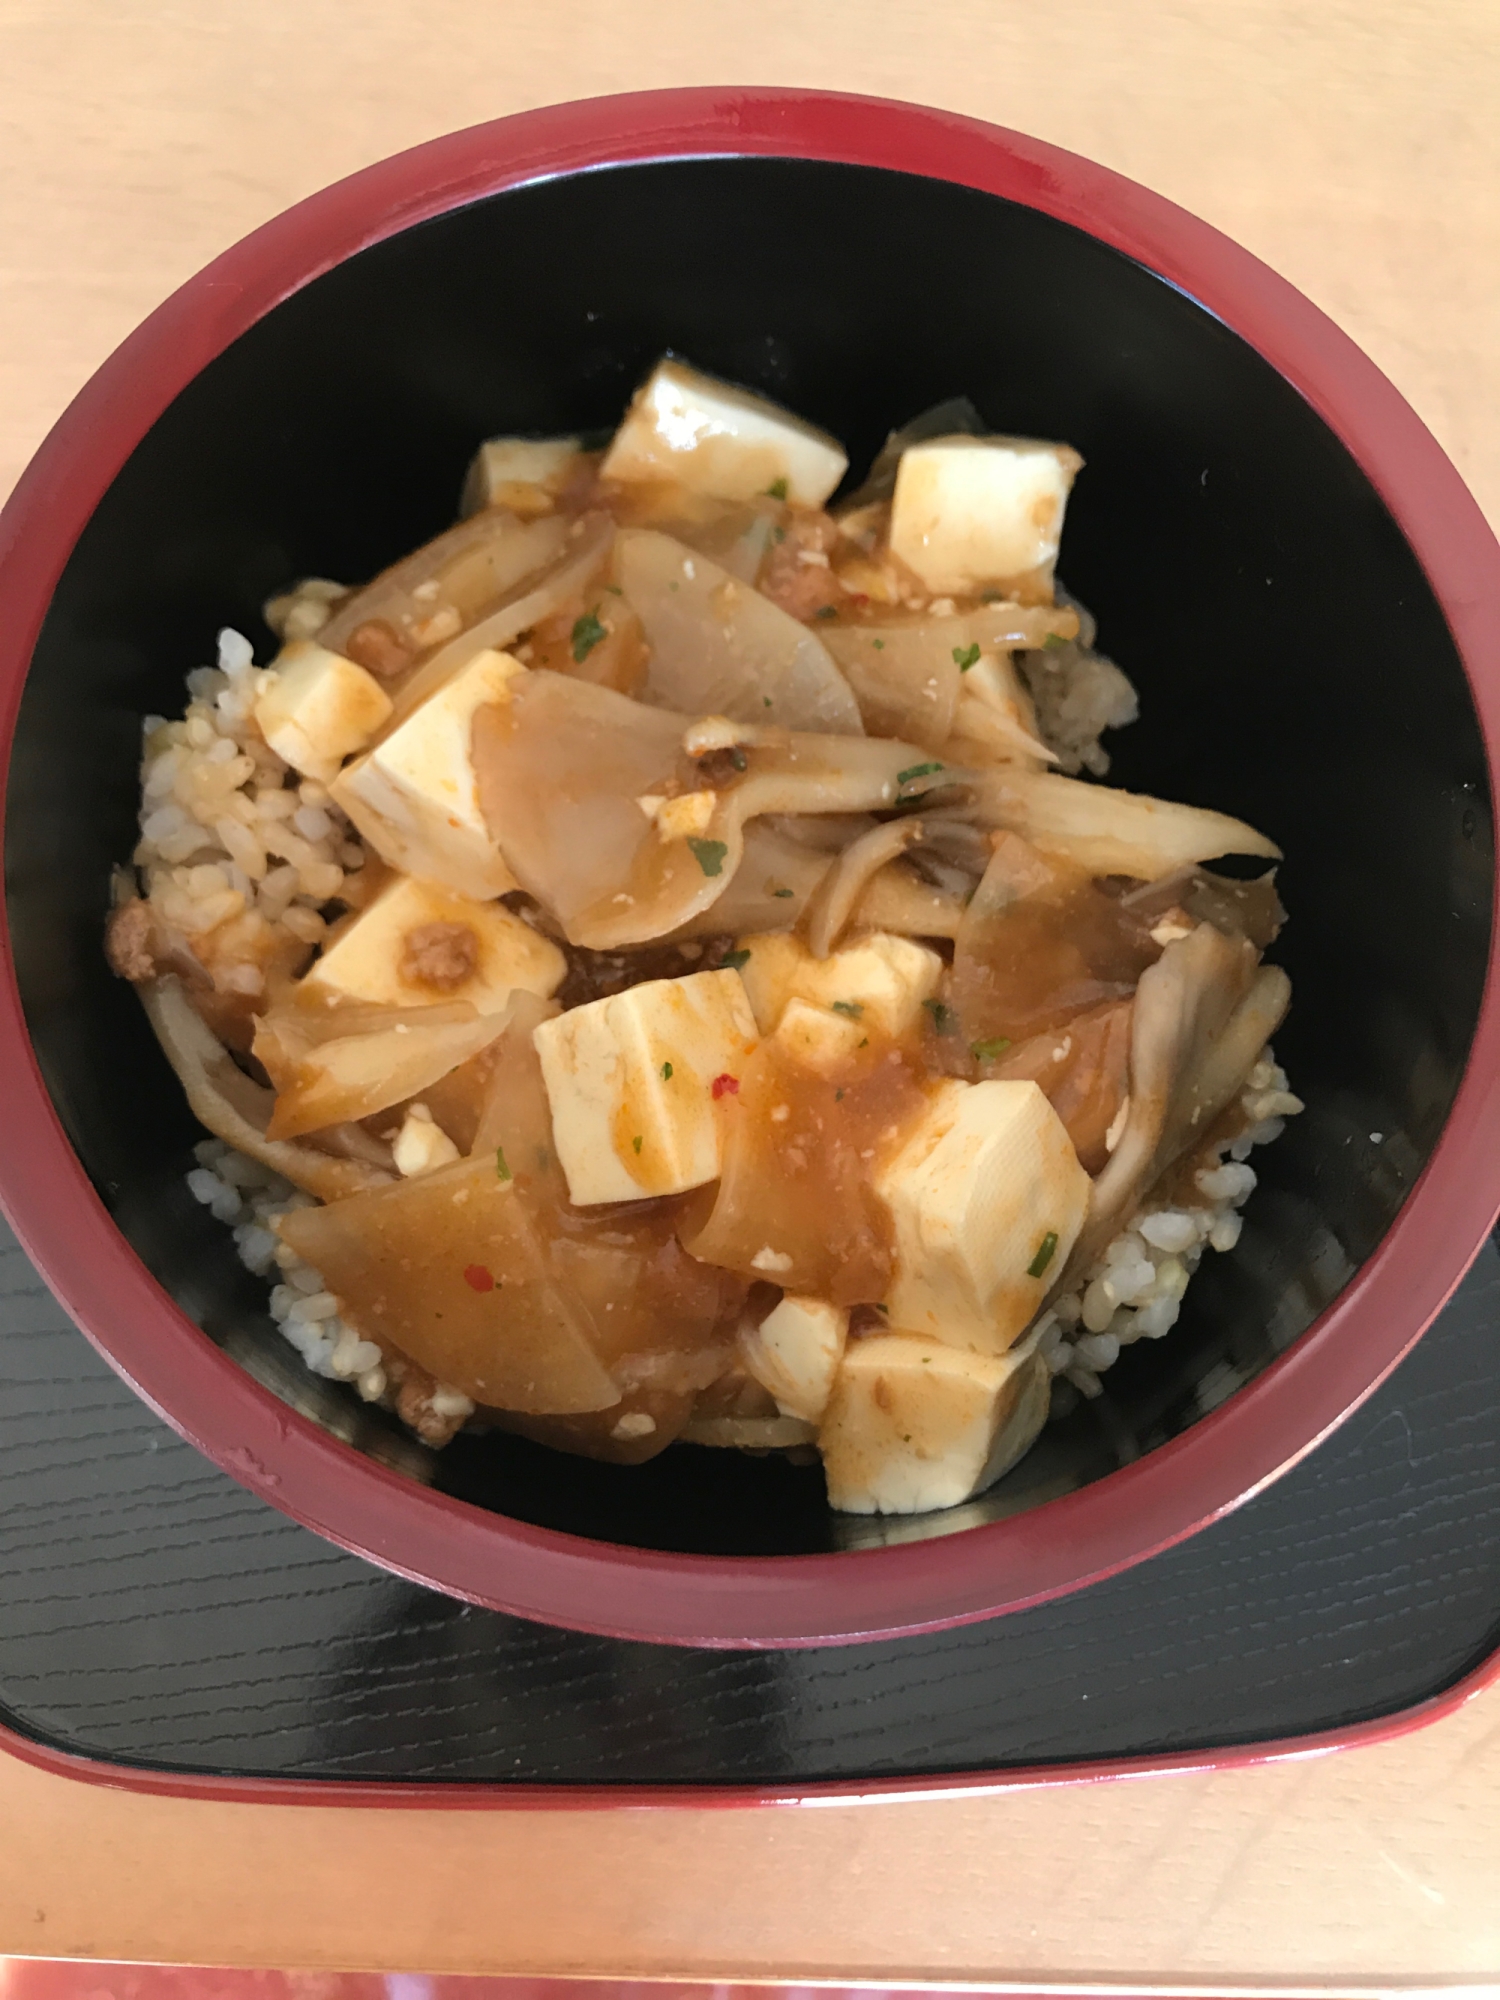 大根と舞茸のマーボー豆腐